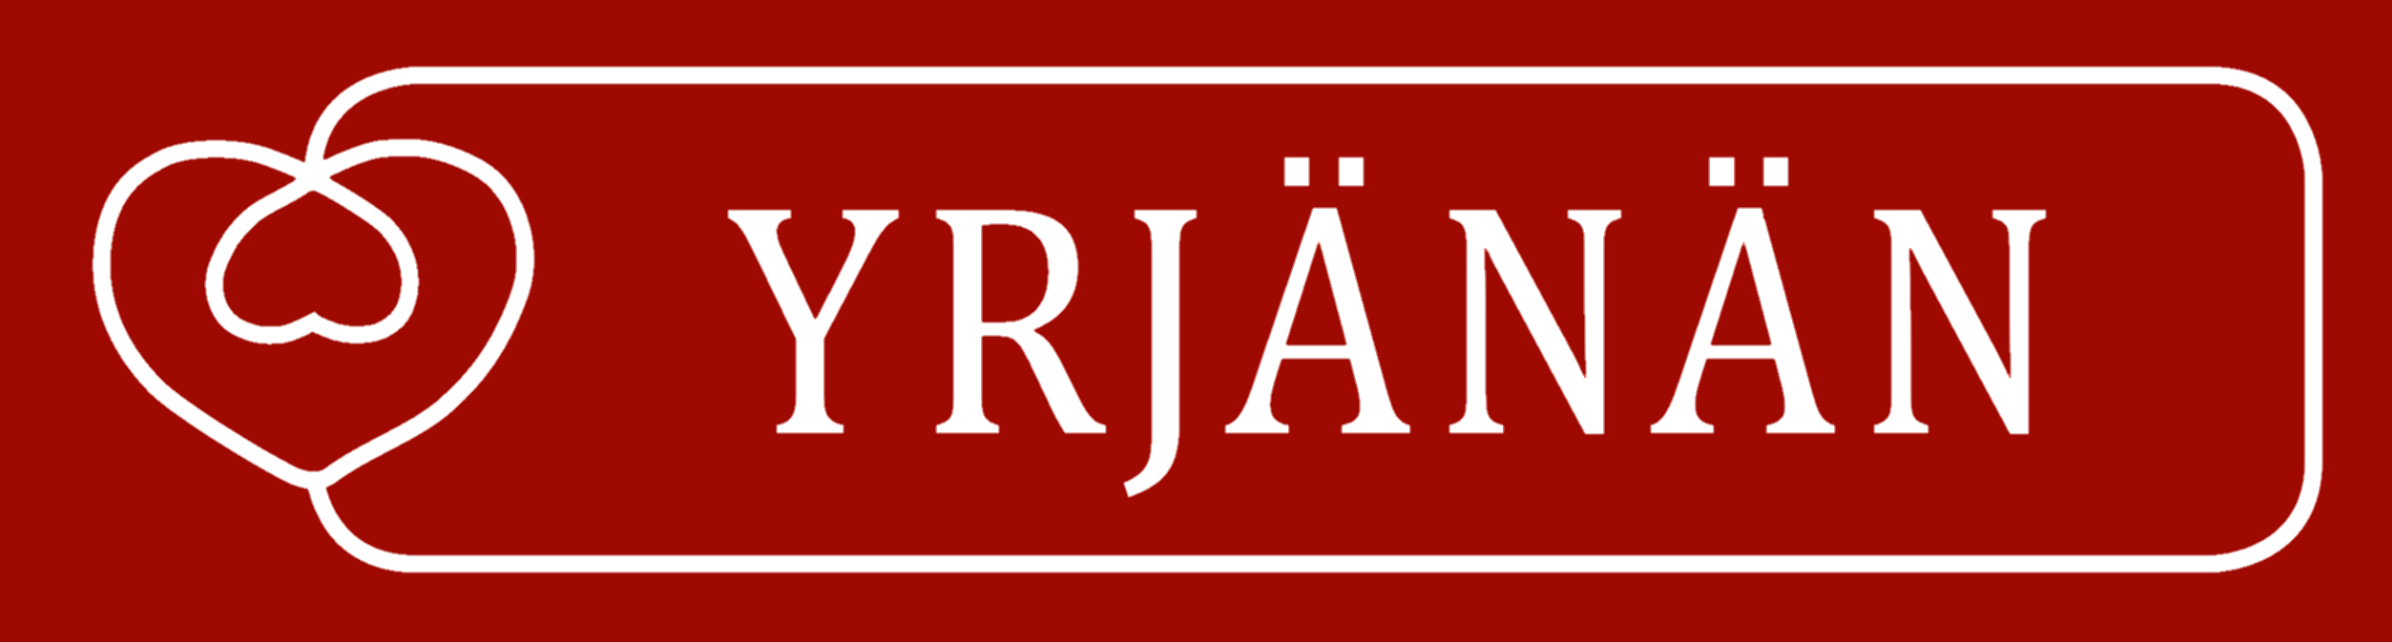 Yrjänän Oy -logo